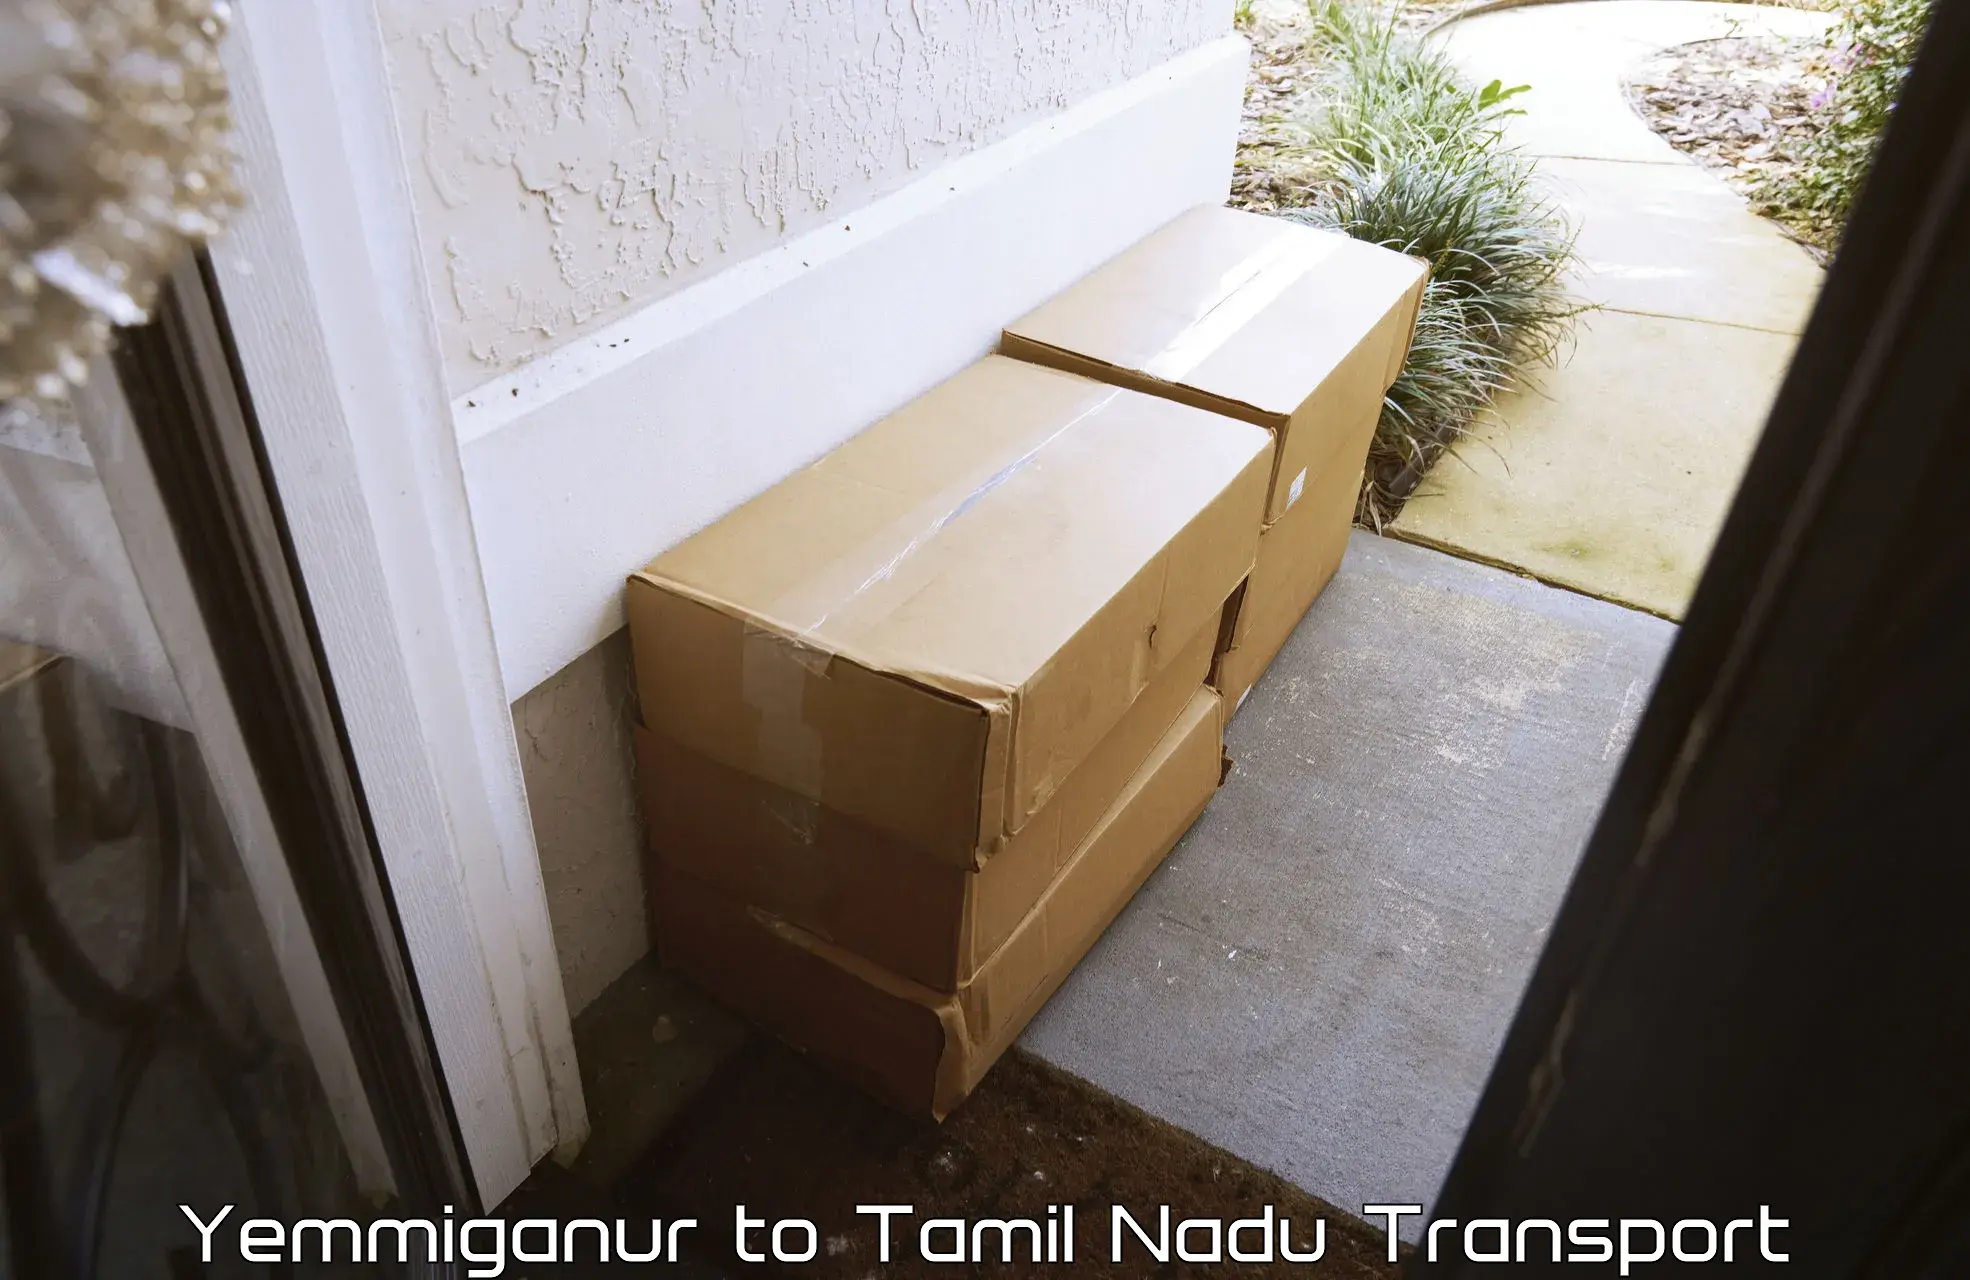 Sending bike to another city Yemmiganur to Azhagappapuram